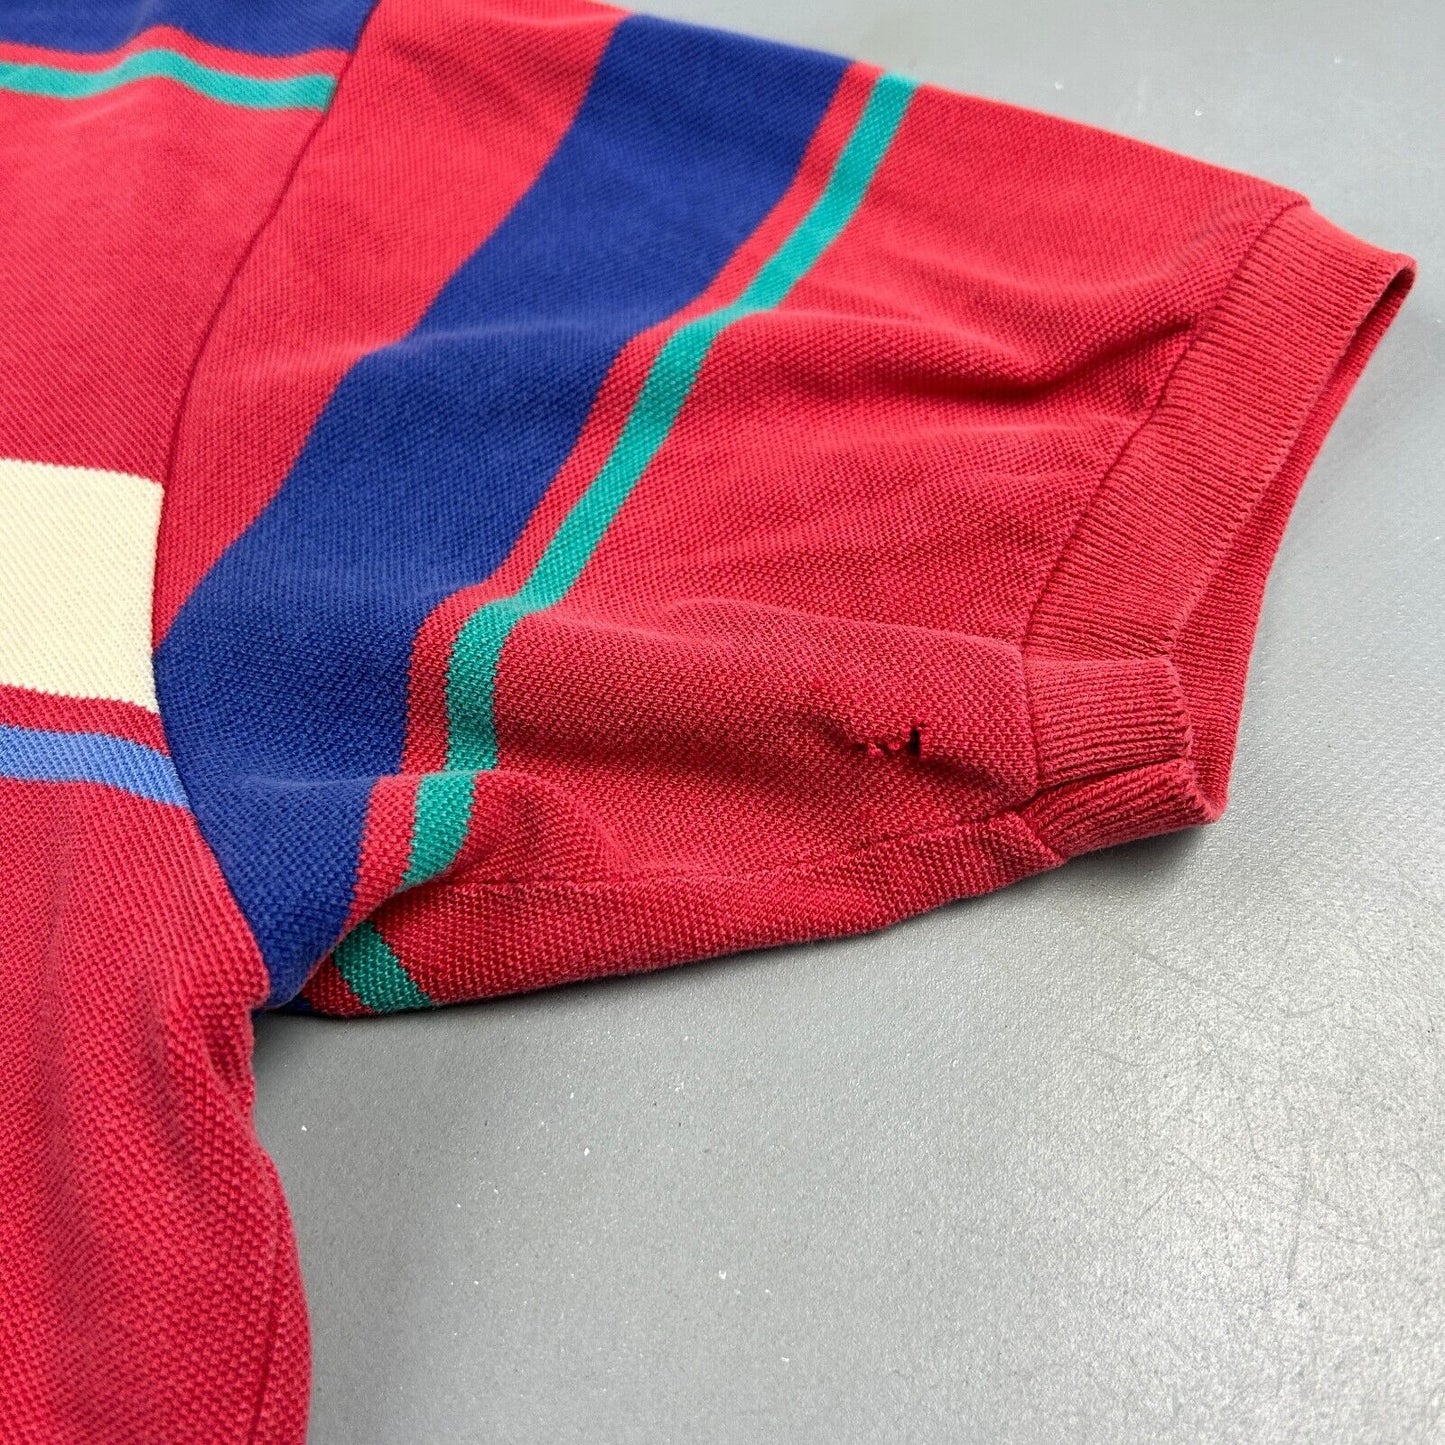 VINTAGE 90s Ralph Lauren Striped Polo Shirt sz XL Adult